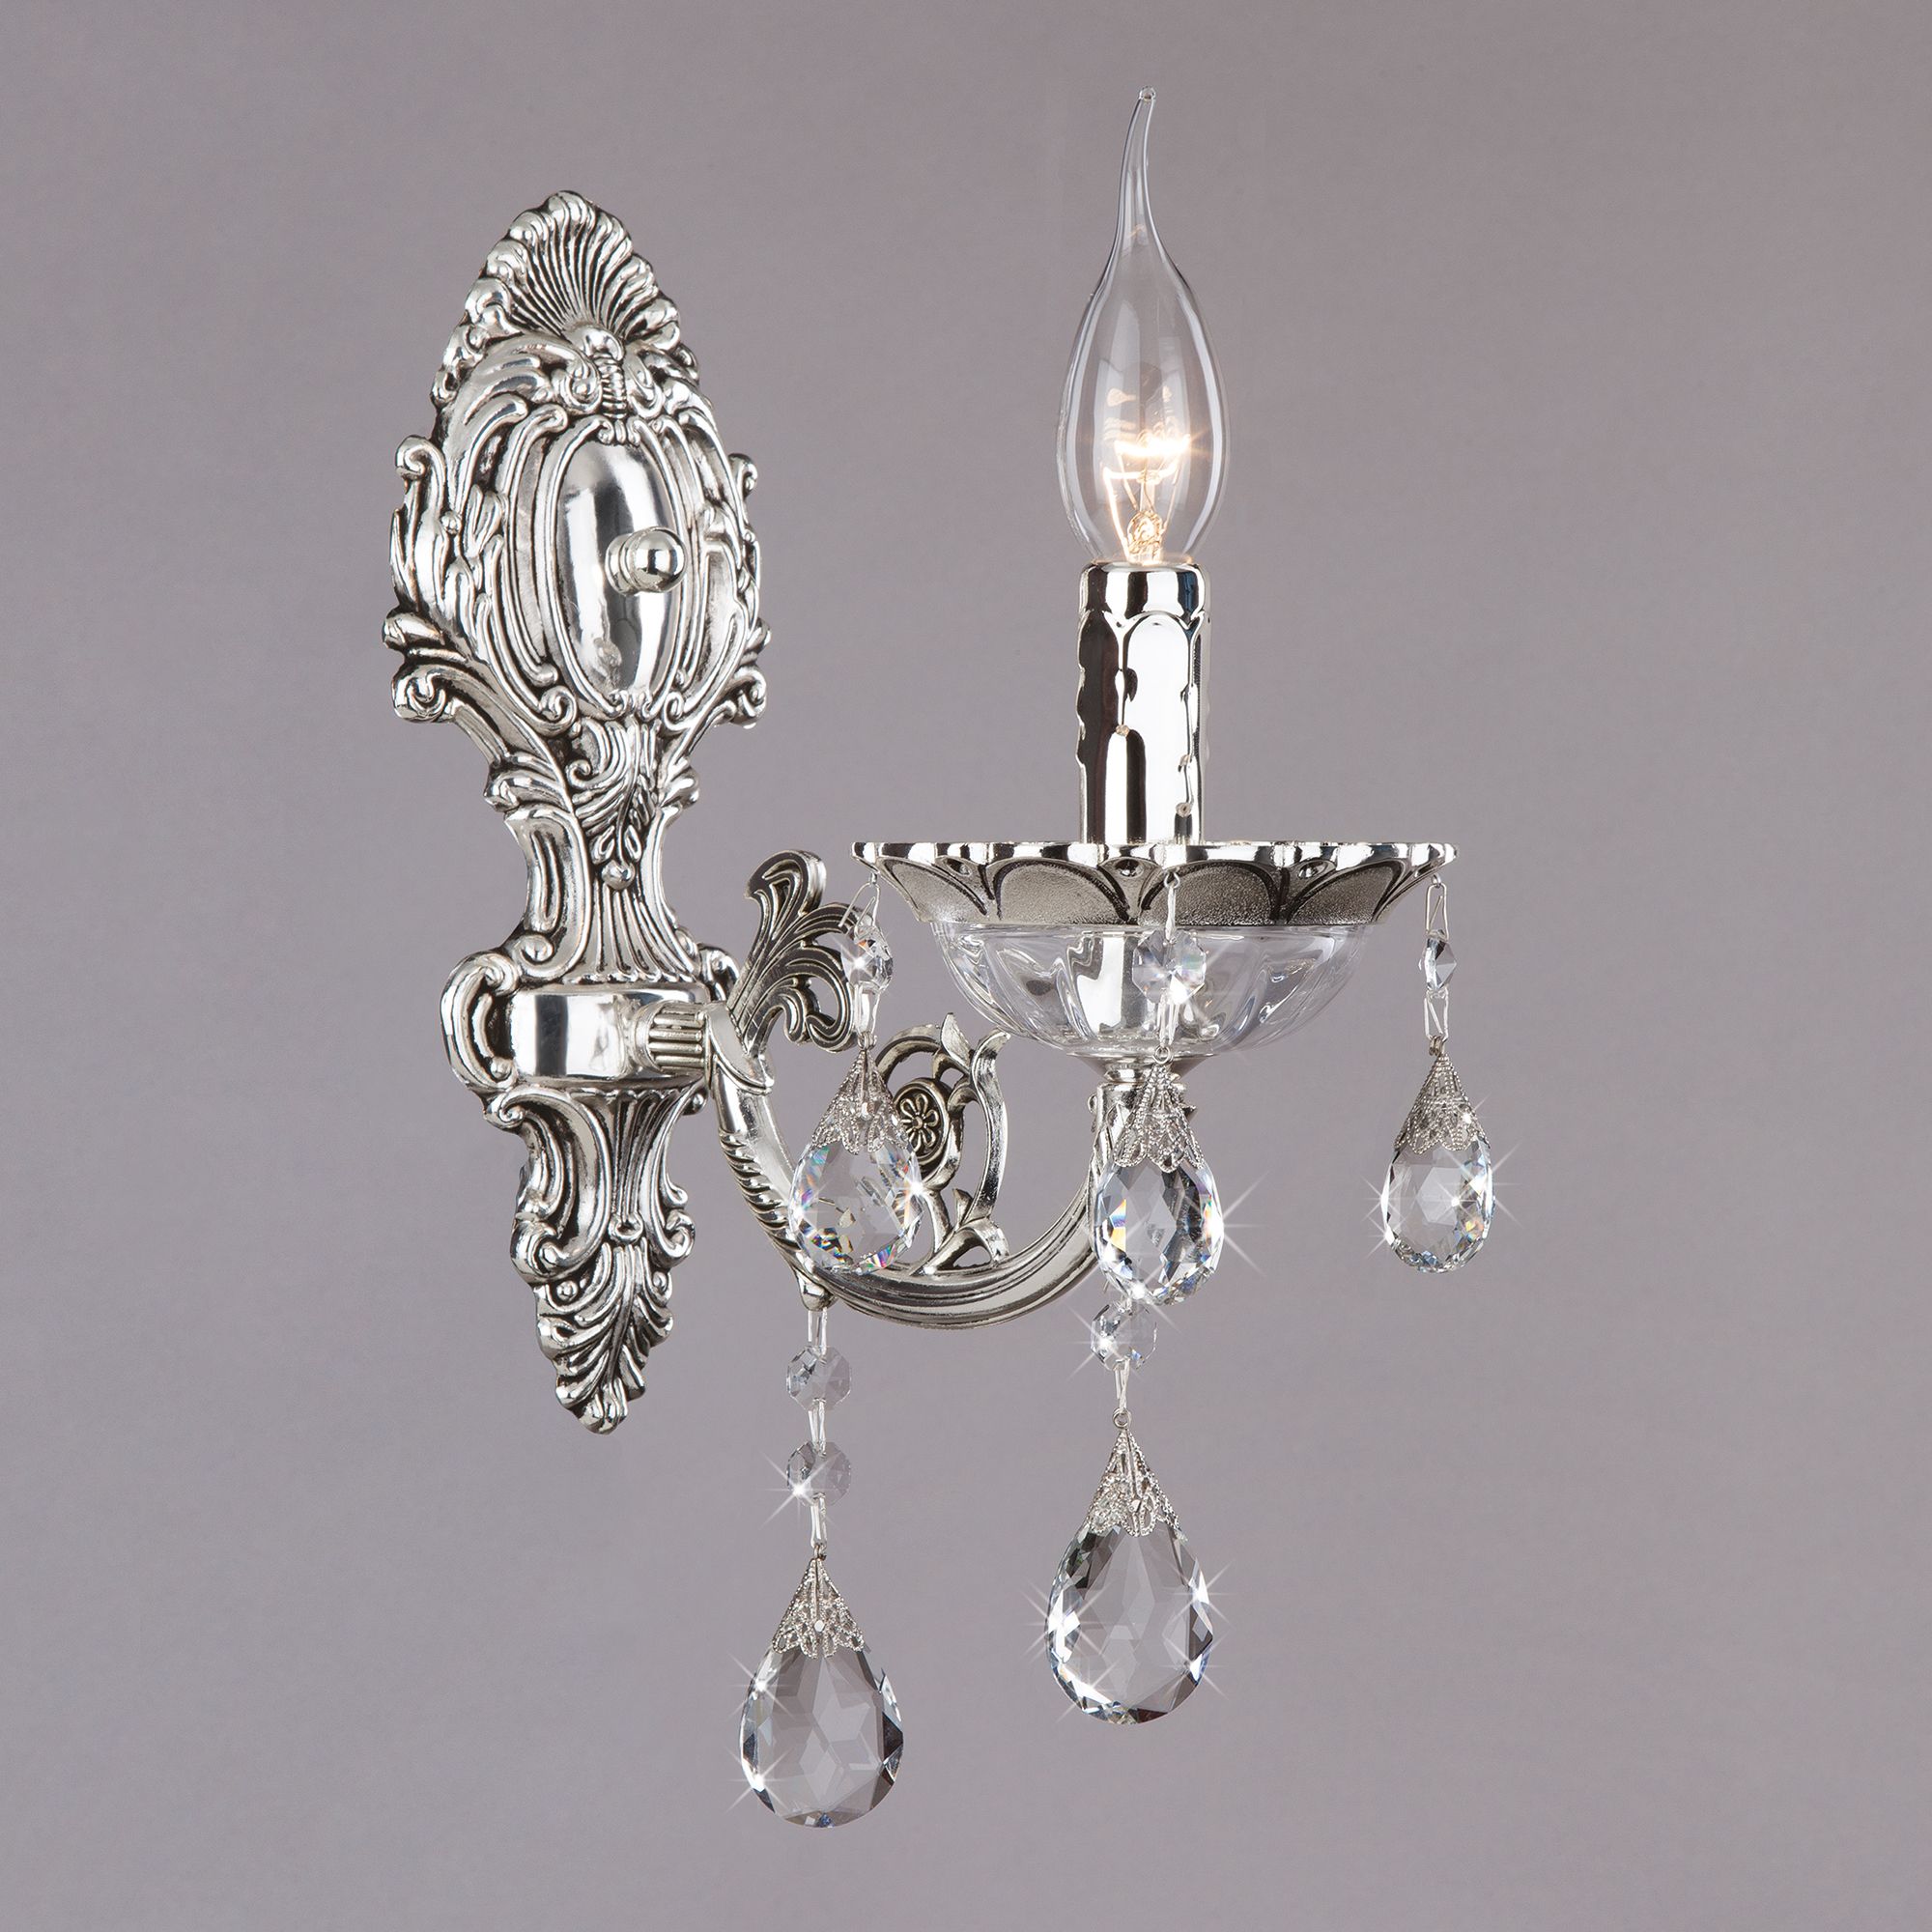 Настенный светильник с хрусталем Bogate's Carolina 230/1 серебряный. Фото 1